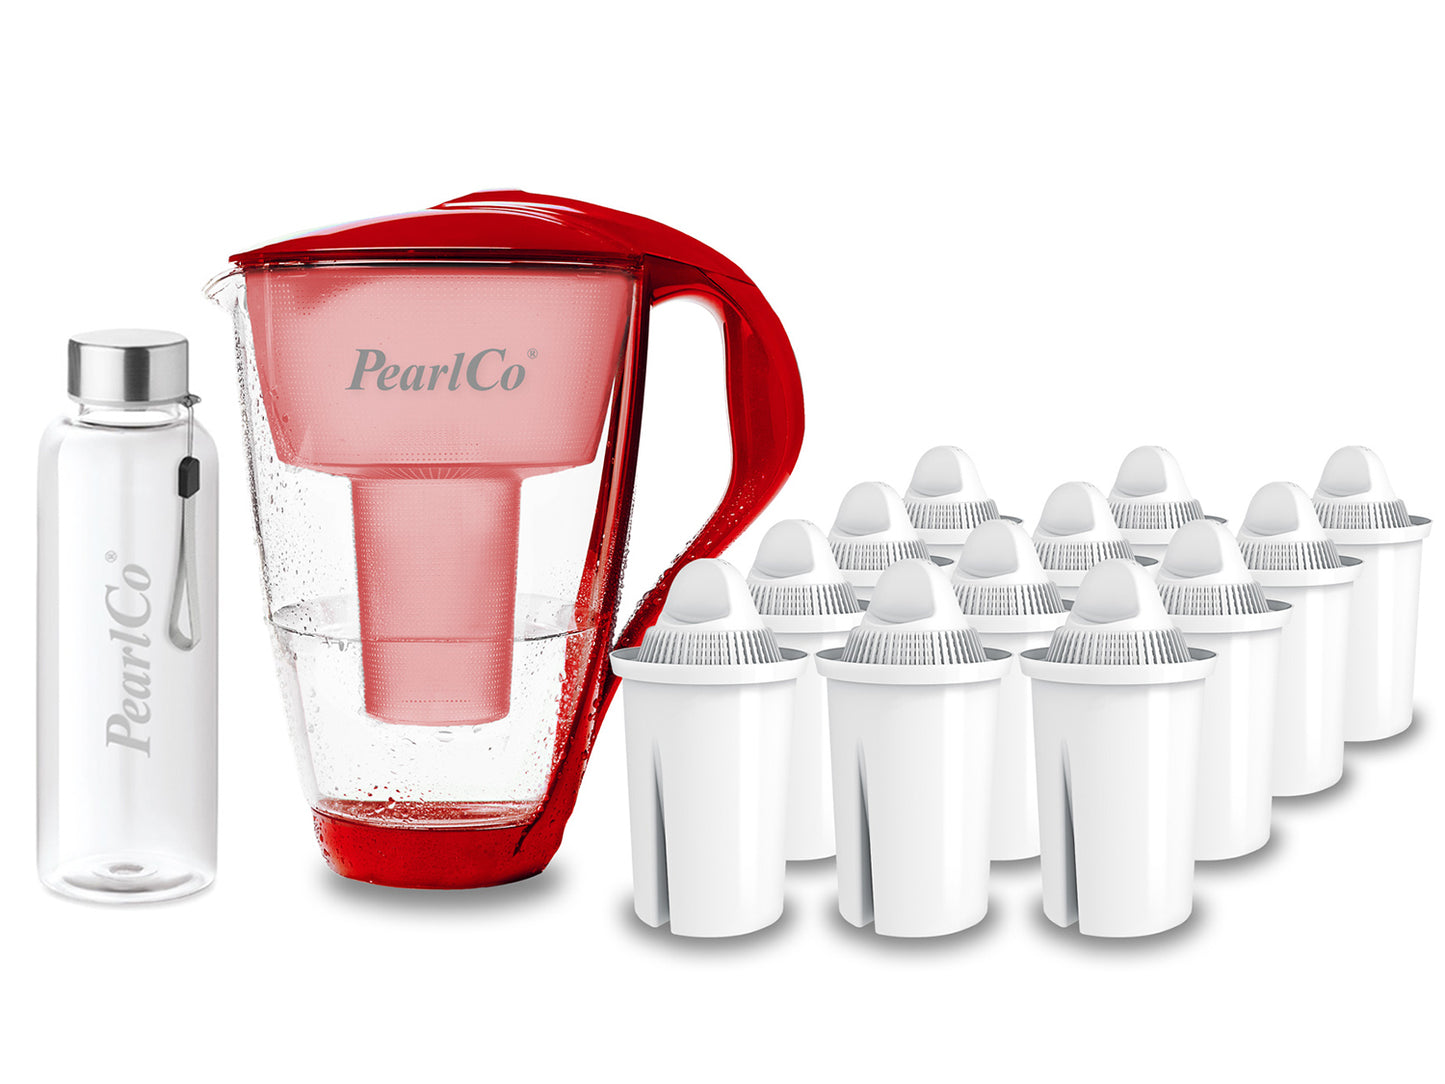 PearlCo Glas Wasserfilter inkl. 12 Kartuschen plus Glasflasche